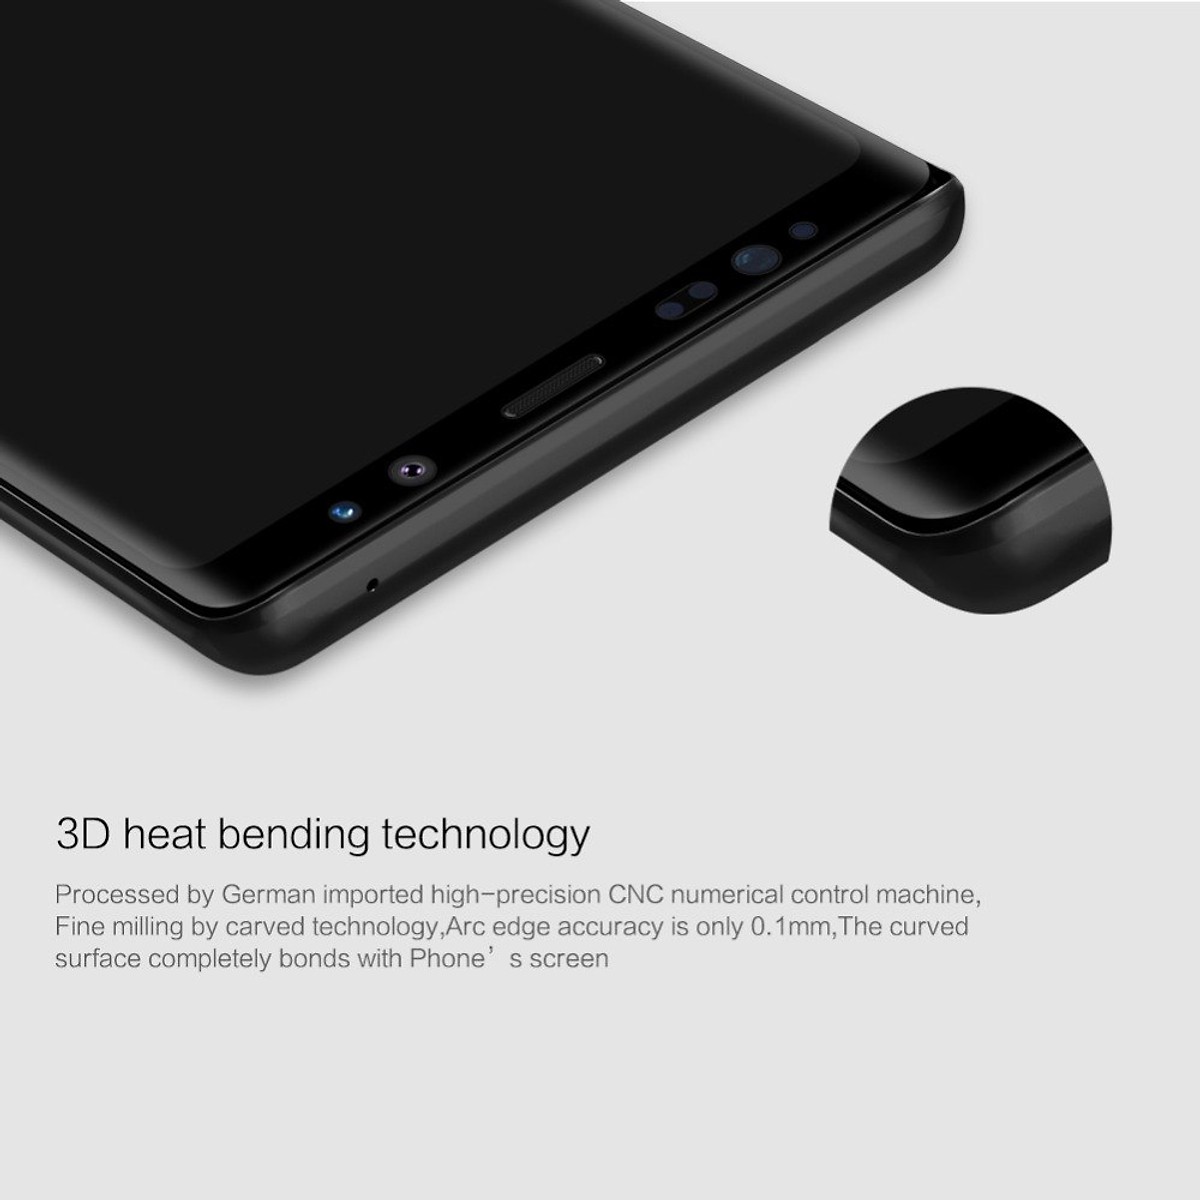 Miếng dán kính cường lực full 3D cho Samsung Galaxy Note 9 hiệu Nillkin CP+ Max